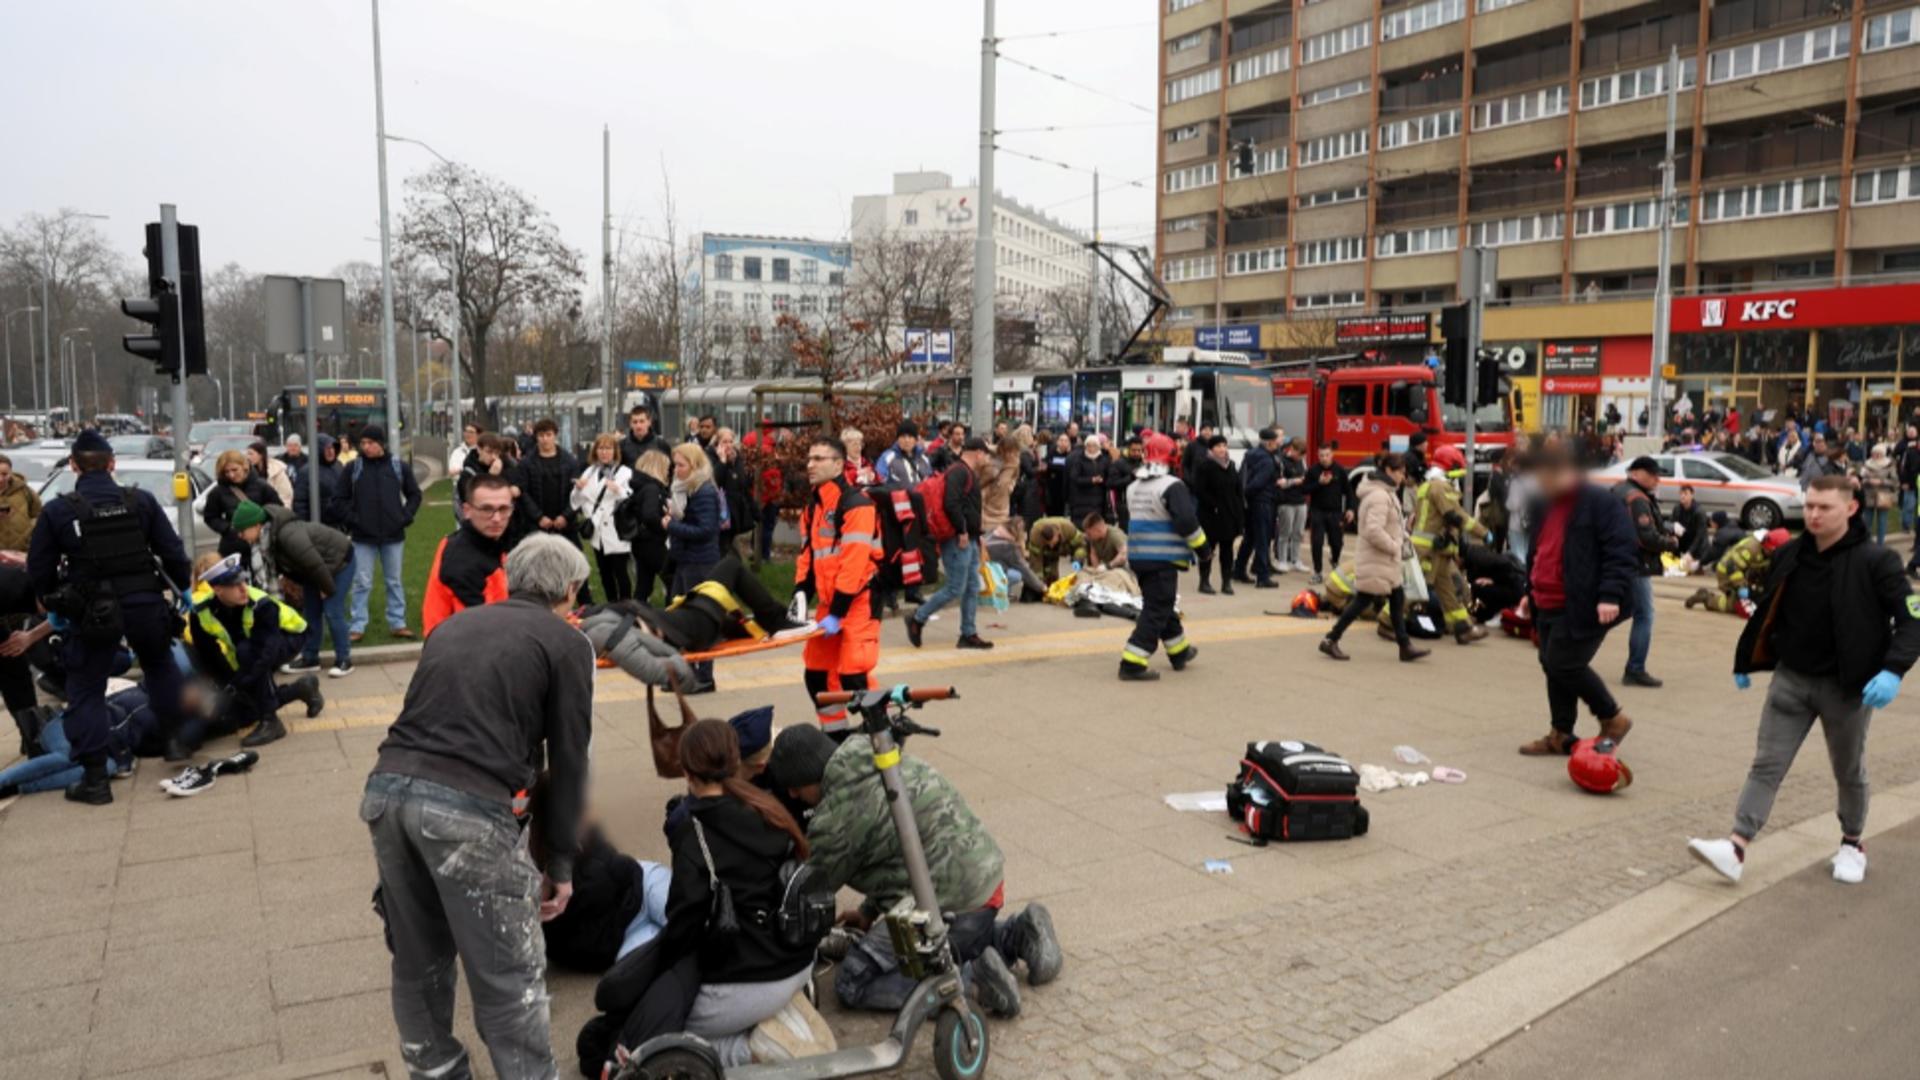 Scene de groază în Polonia, după ce o mașină a intrat în mulțime. 17 răniți, bilanț provizoriu - FOTO+VIDEO